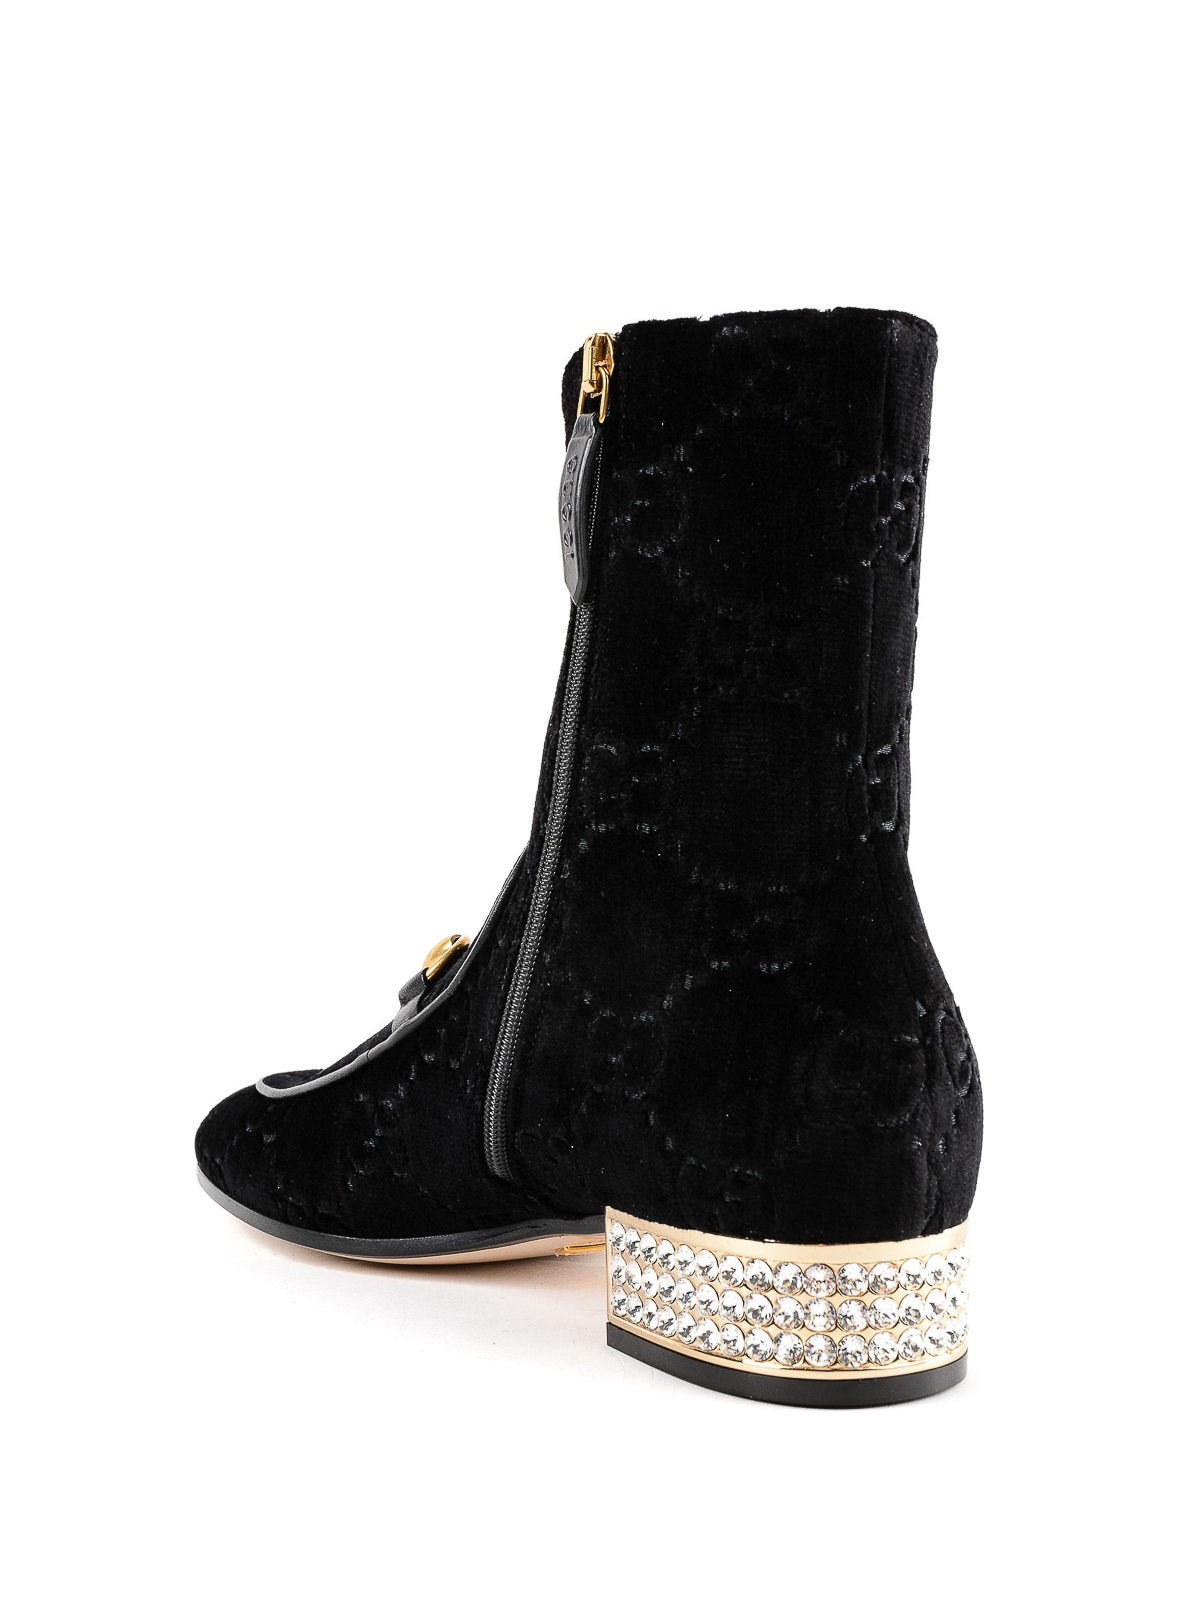 GG velvet booties with embellished heel 